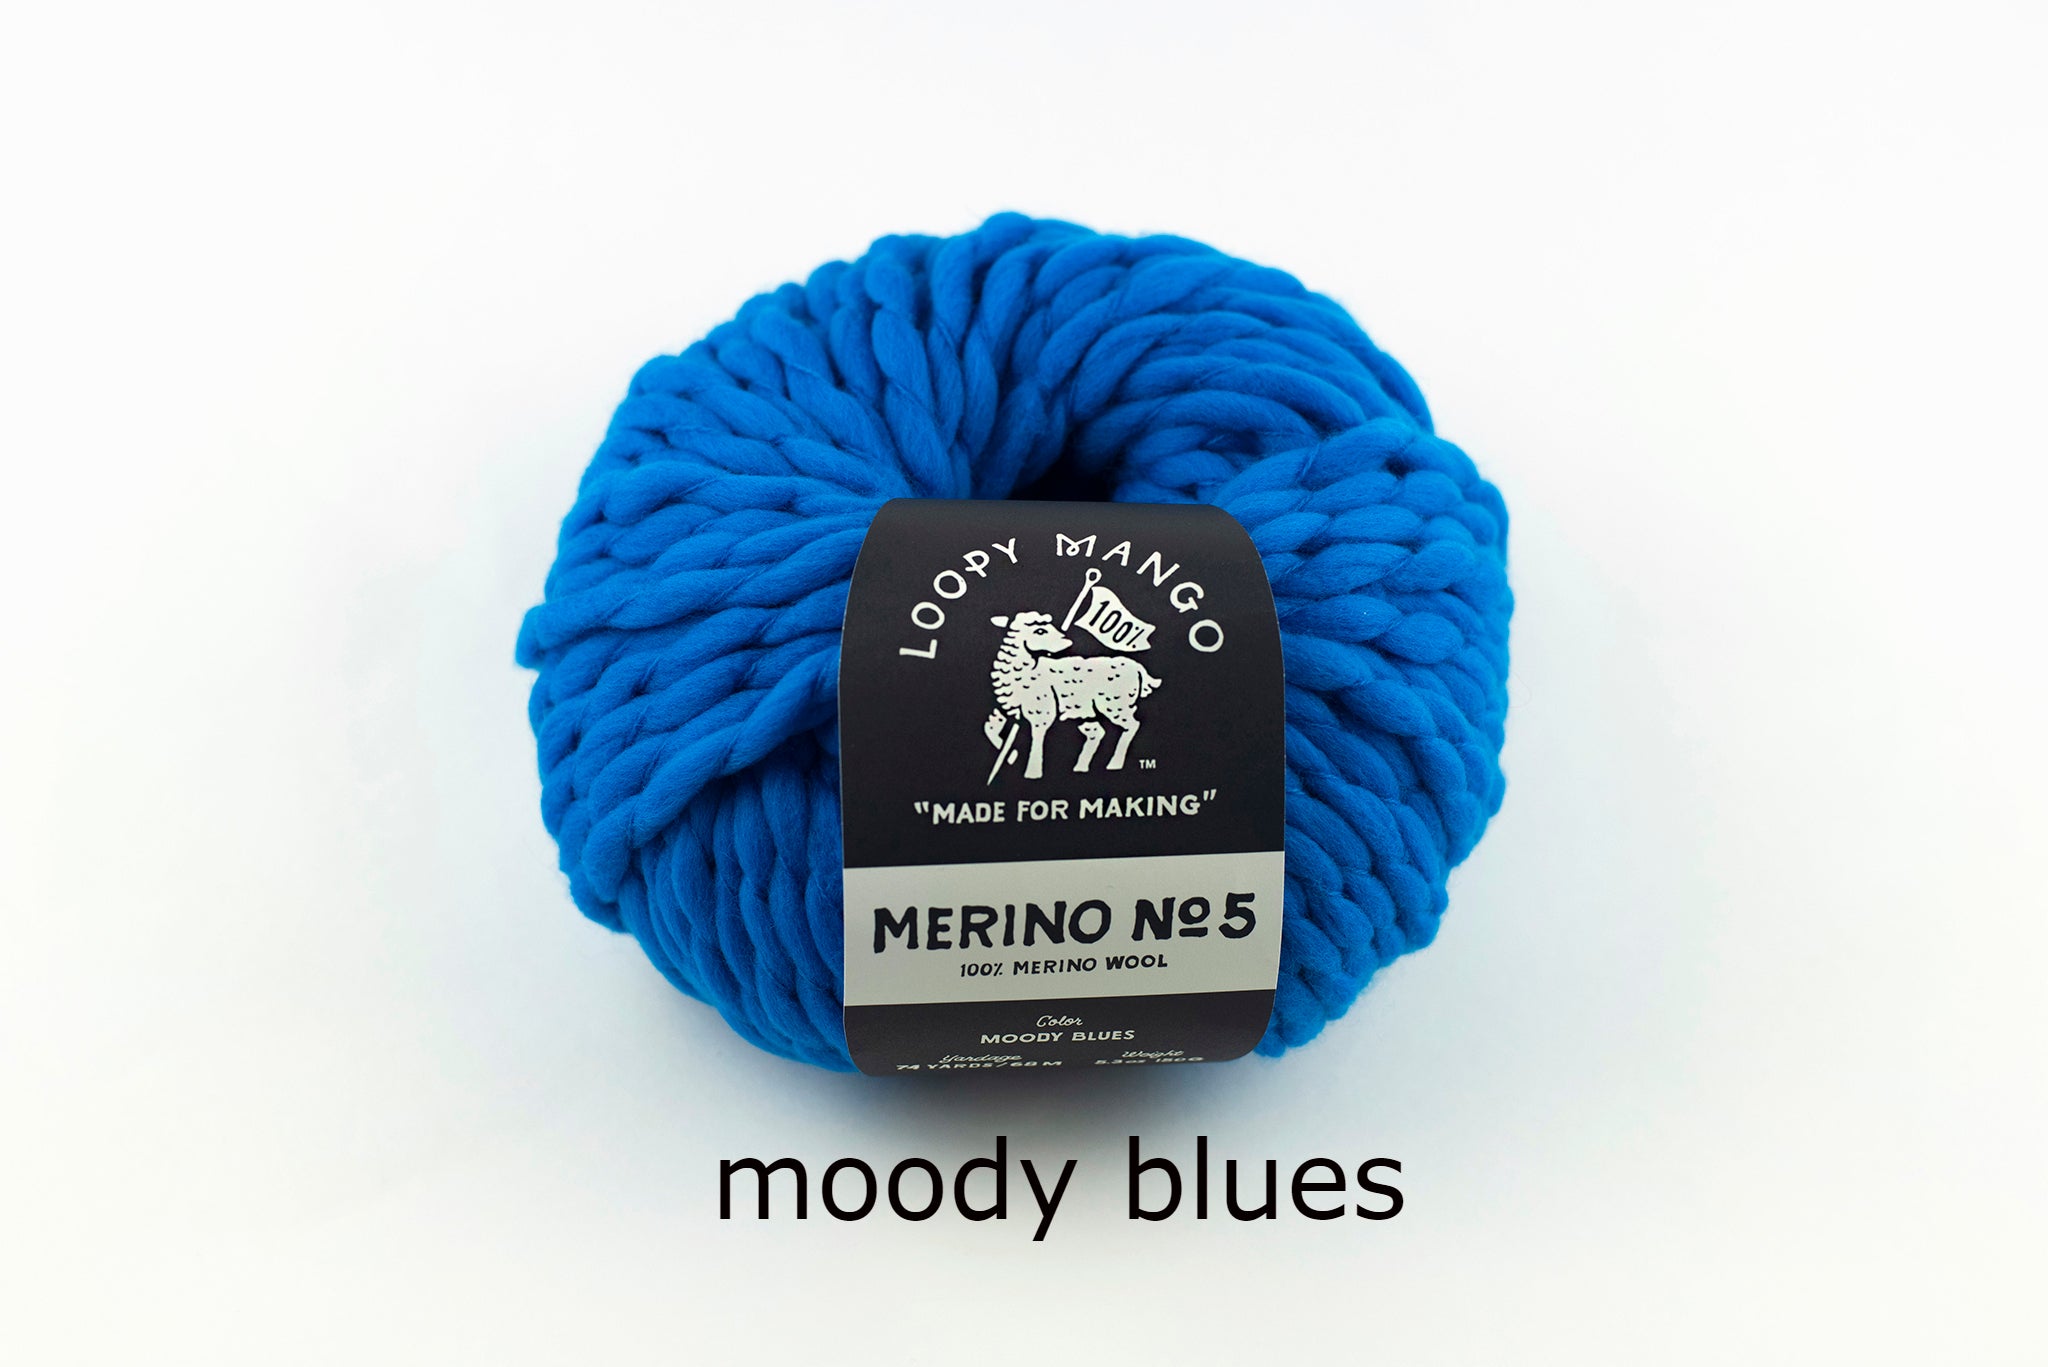 Cowboy Blue Hand Dyed Wool Yarn #5 Bulky